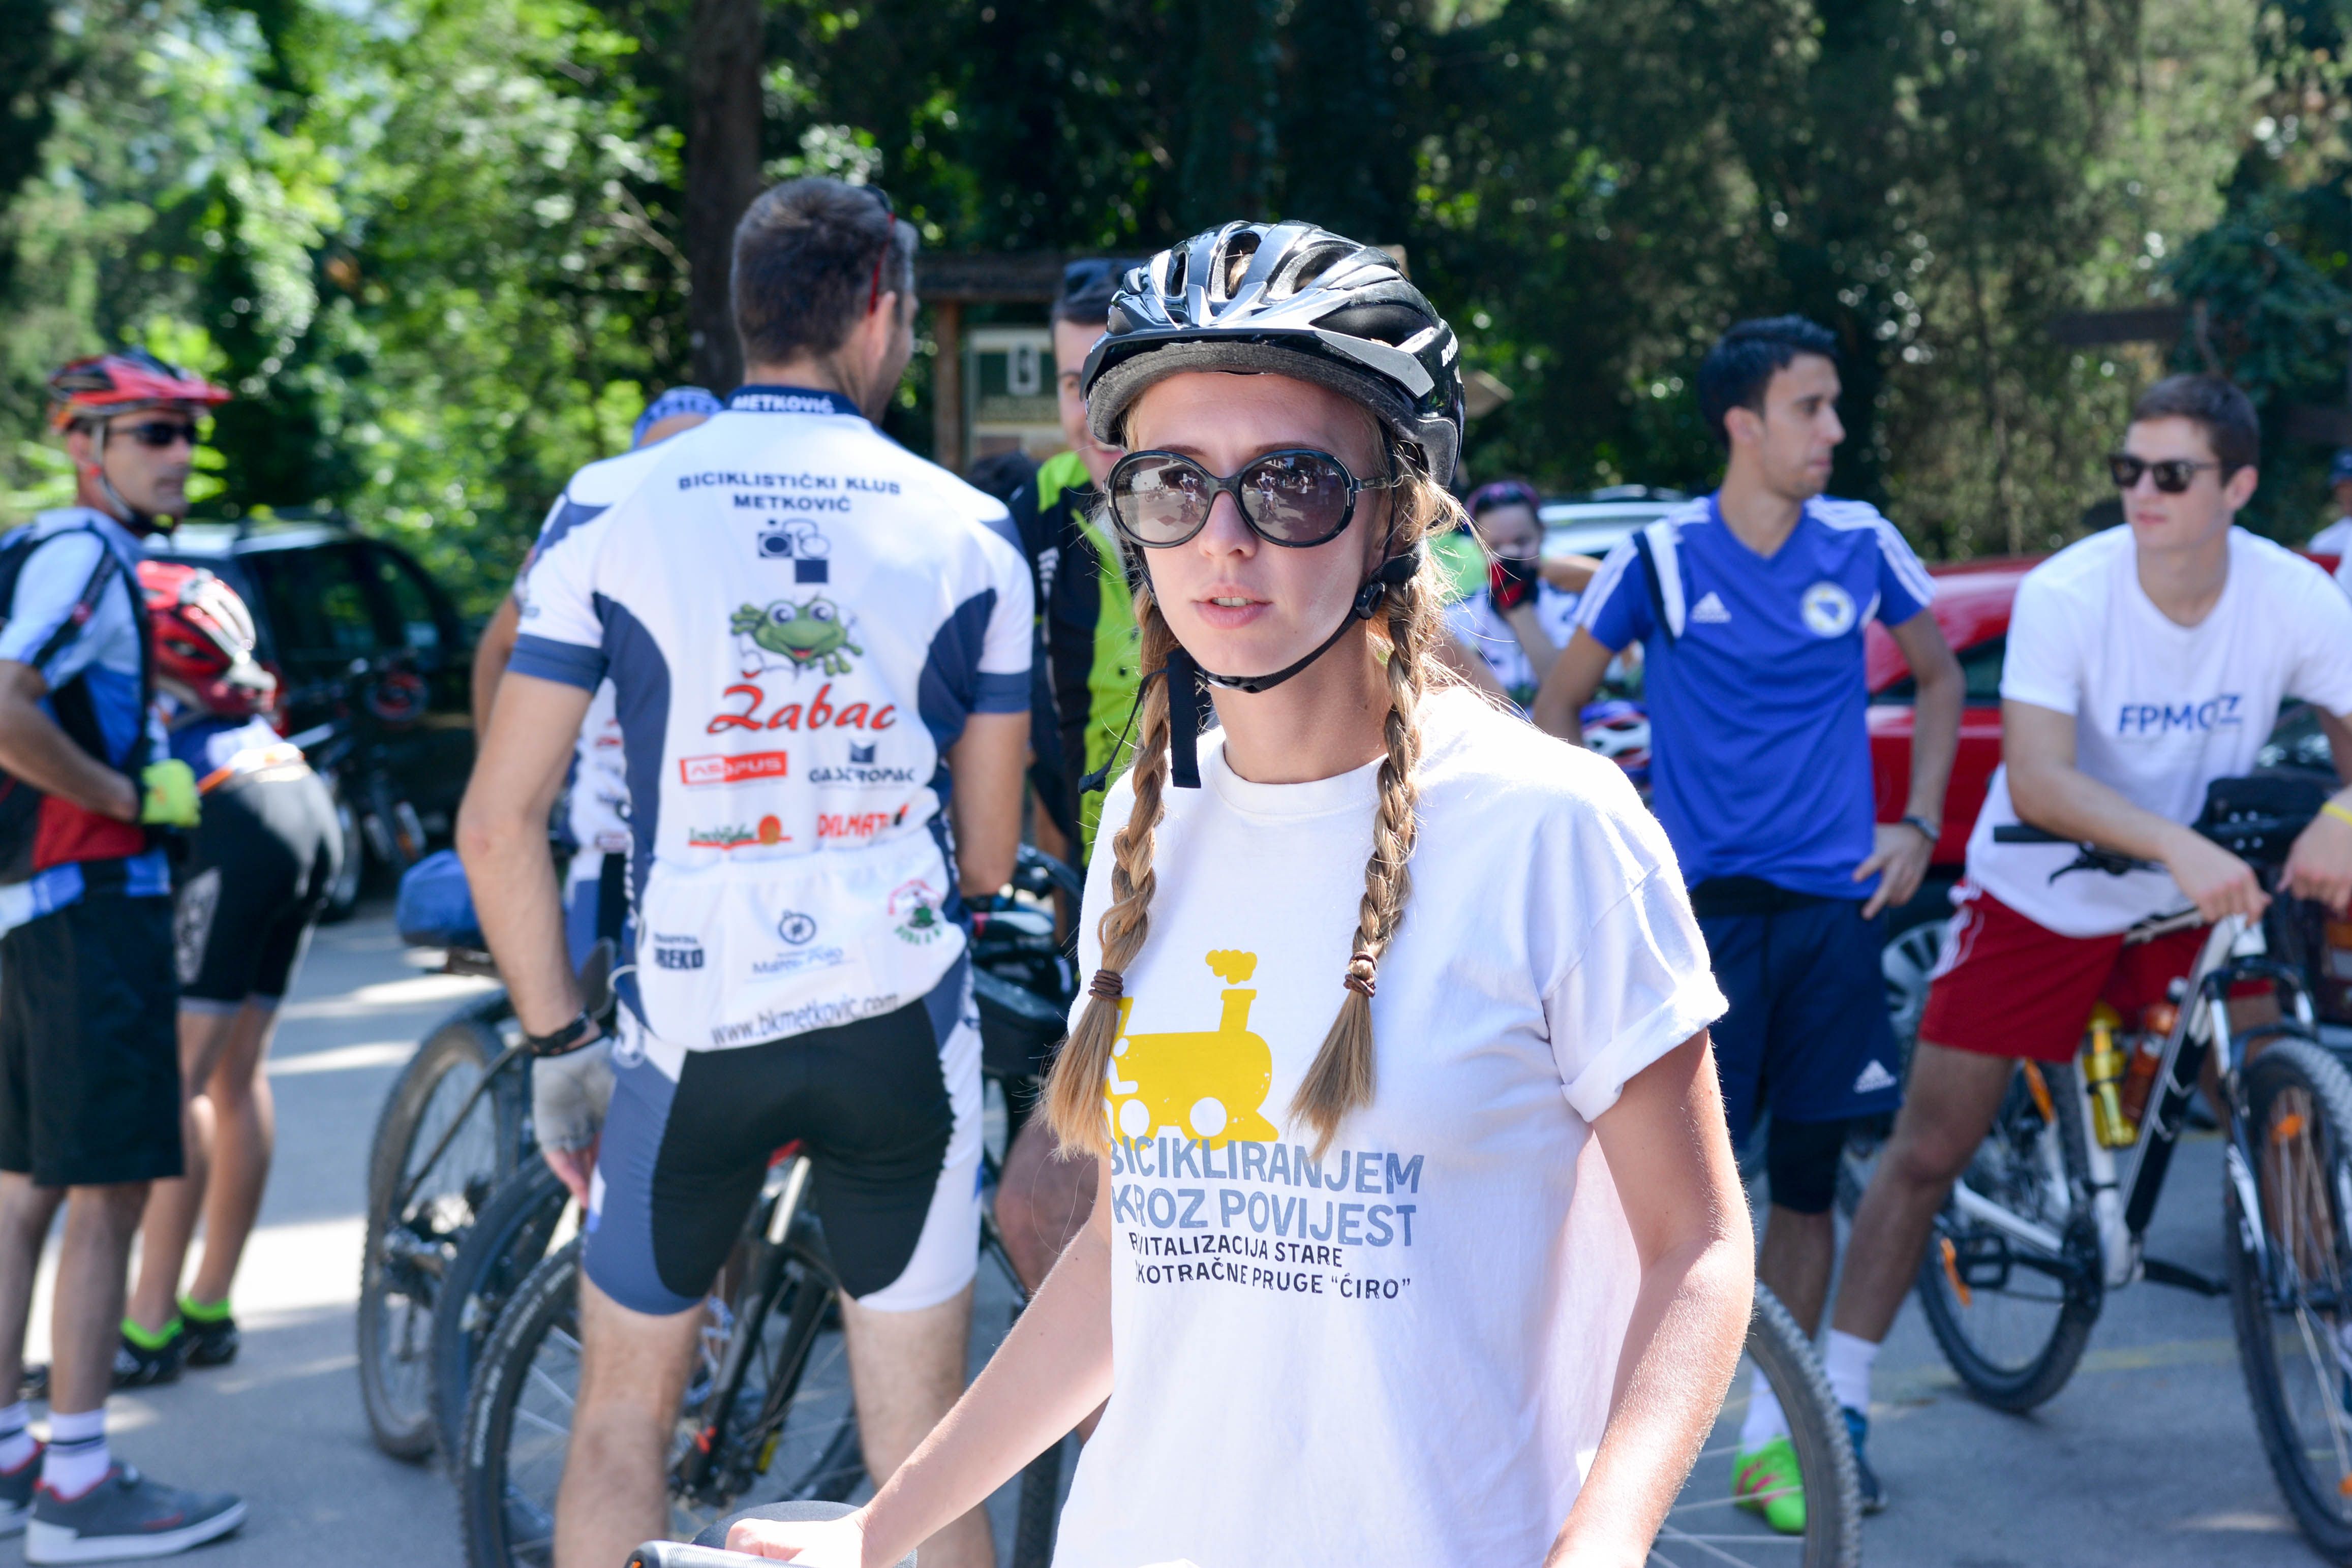 MOSTAR, 4. srpnja (FENA) - U povodu obilježavanja 115. godišnjice od puštanja u promet uskotračne pruge na području Hercegovine, u nedjelju je na području Hutova blata upriličena Ćirina biciklijada na kojoj je sudjelovalo više od dvjesta biciklista iz BiH i Hrvatske.